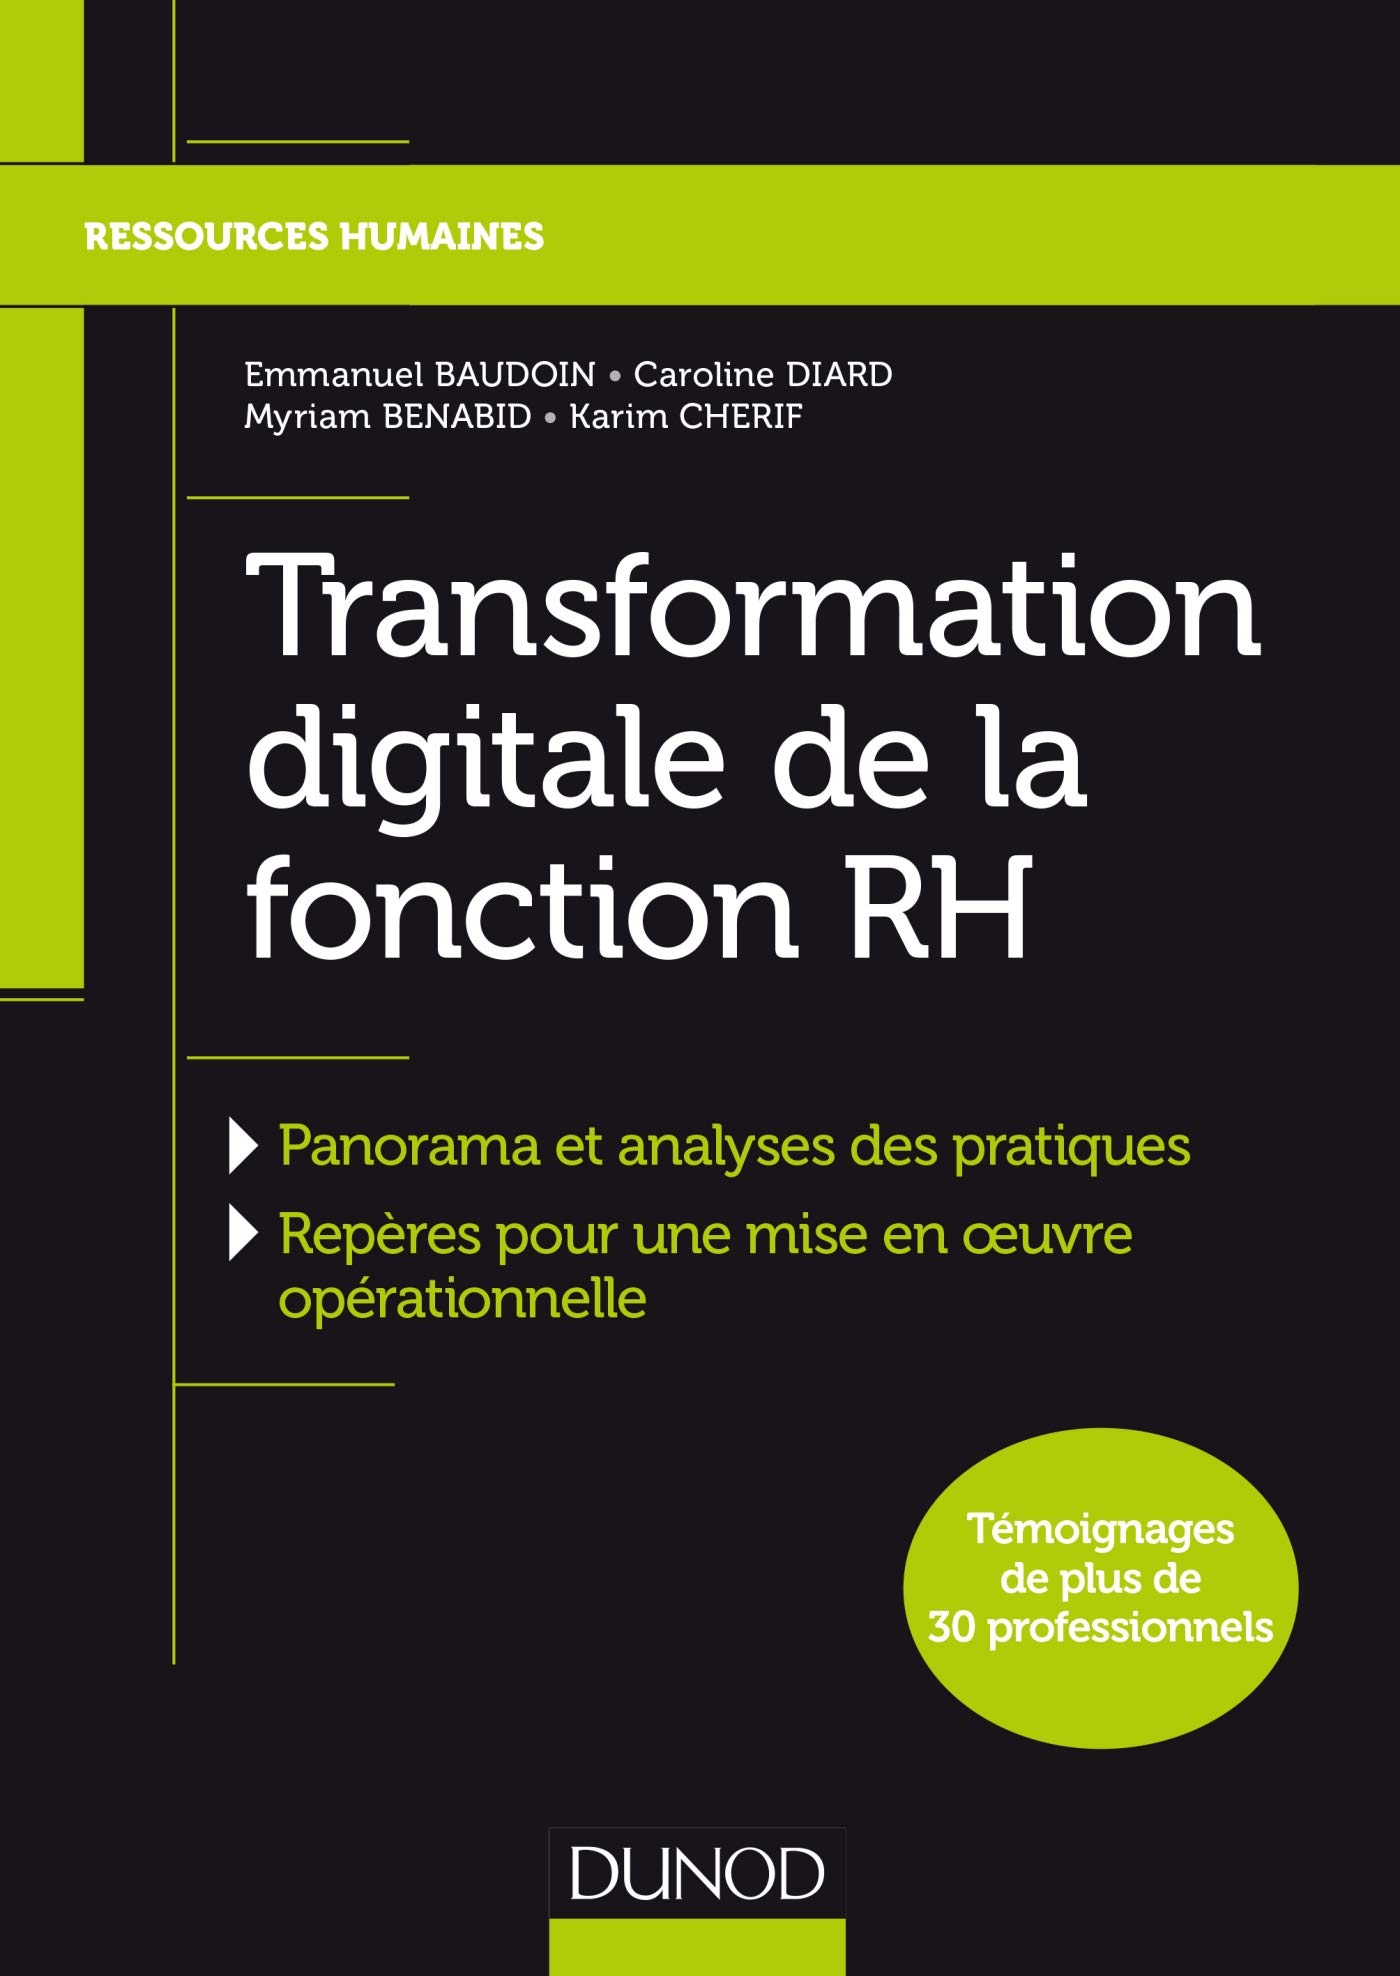 Couverture du livre "Transformation digitale de la fonction RH"